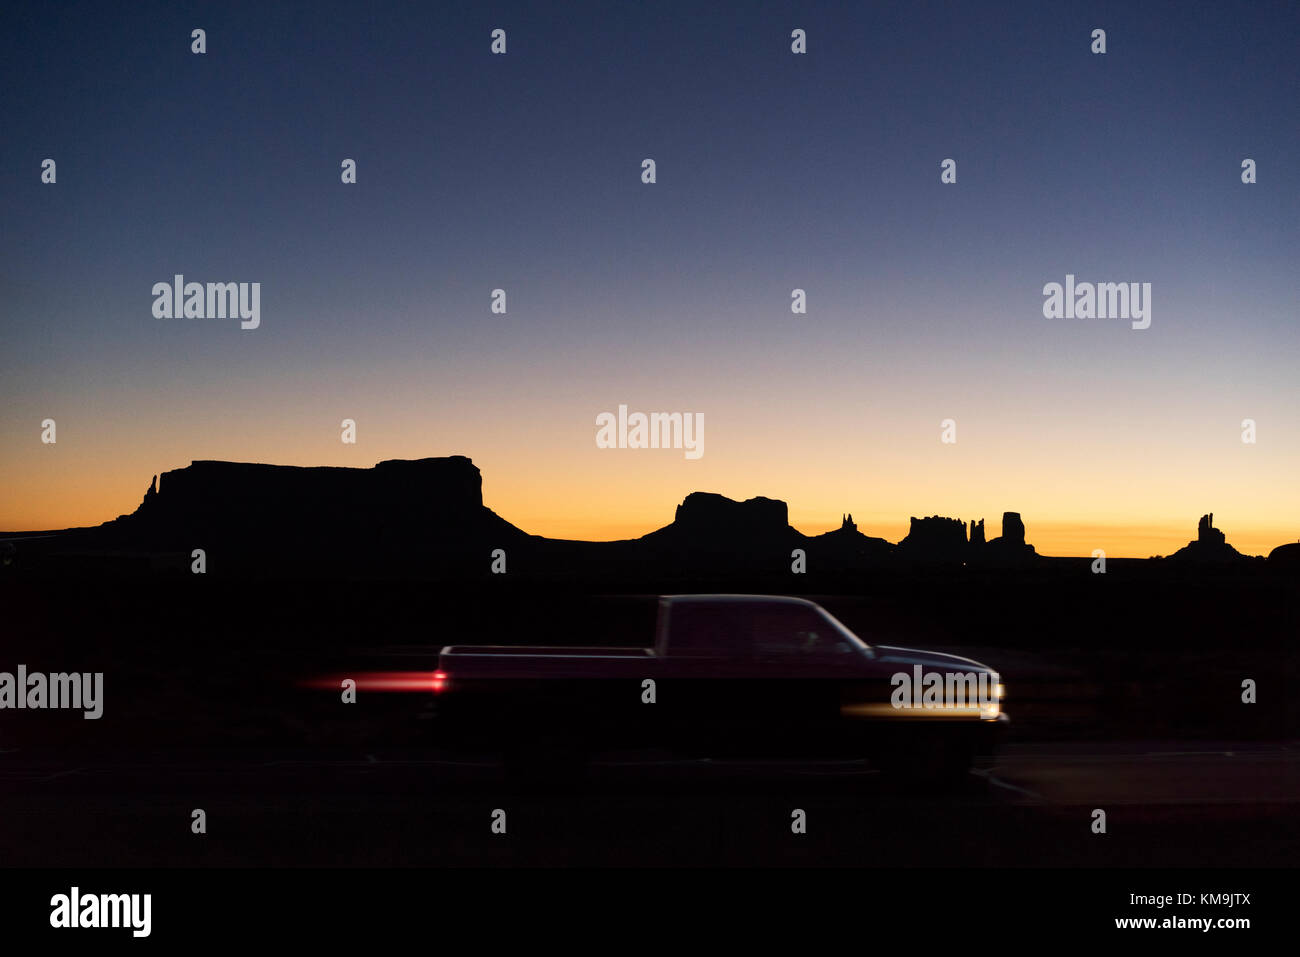 Local navajo iniziate la giornata con una splendida alba e le luci del mobile di insediamenti nel deserto circostante Foto Stock